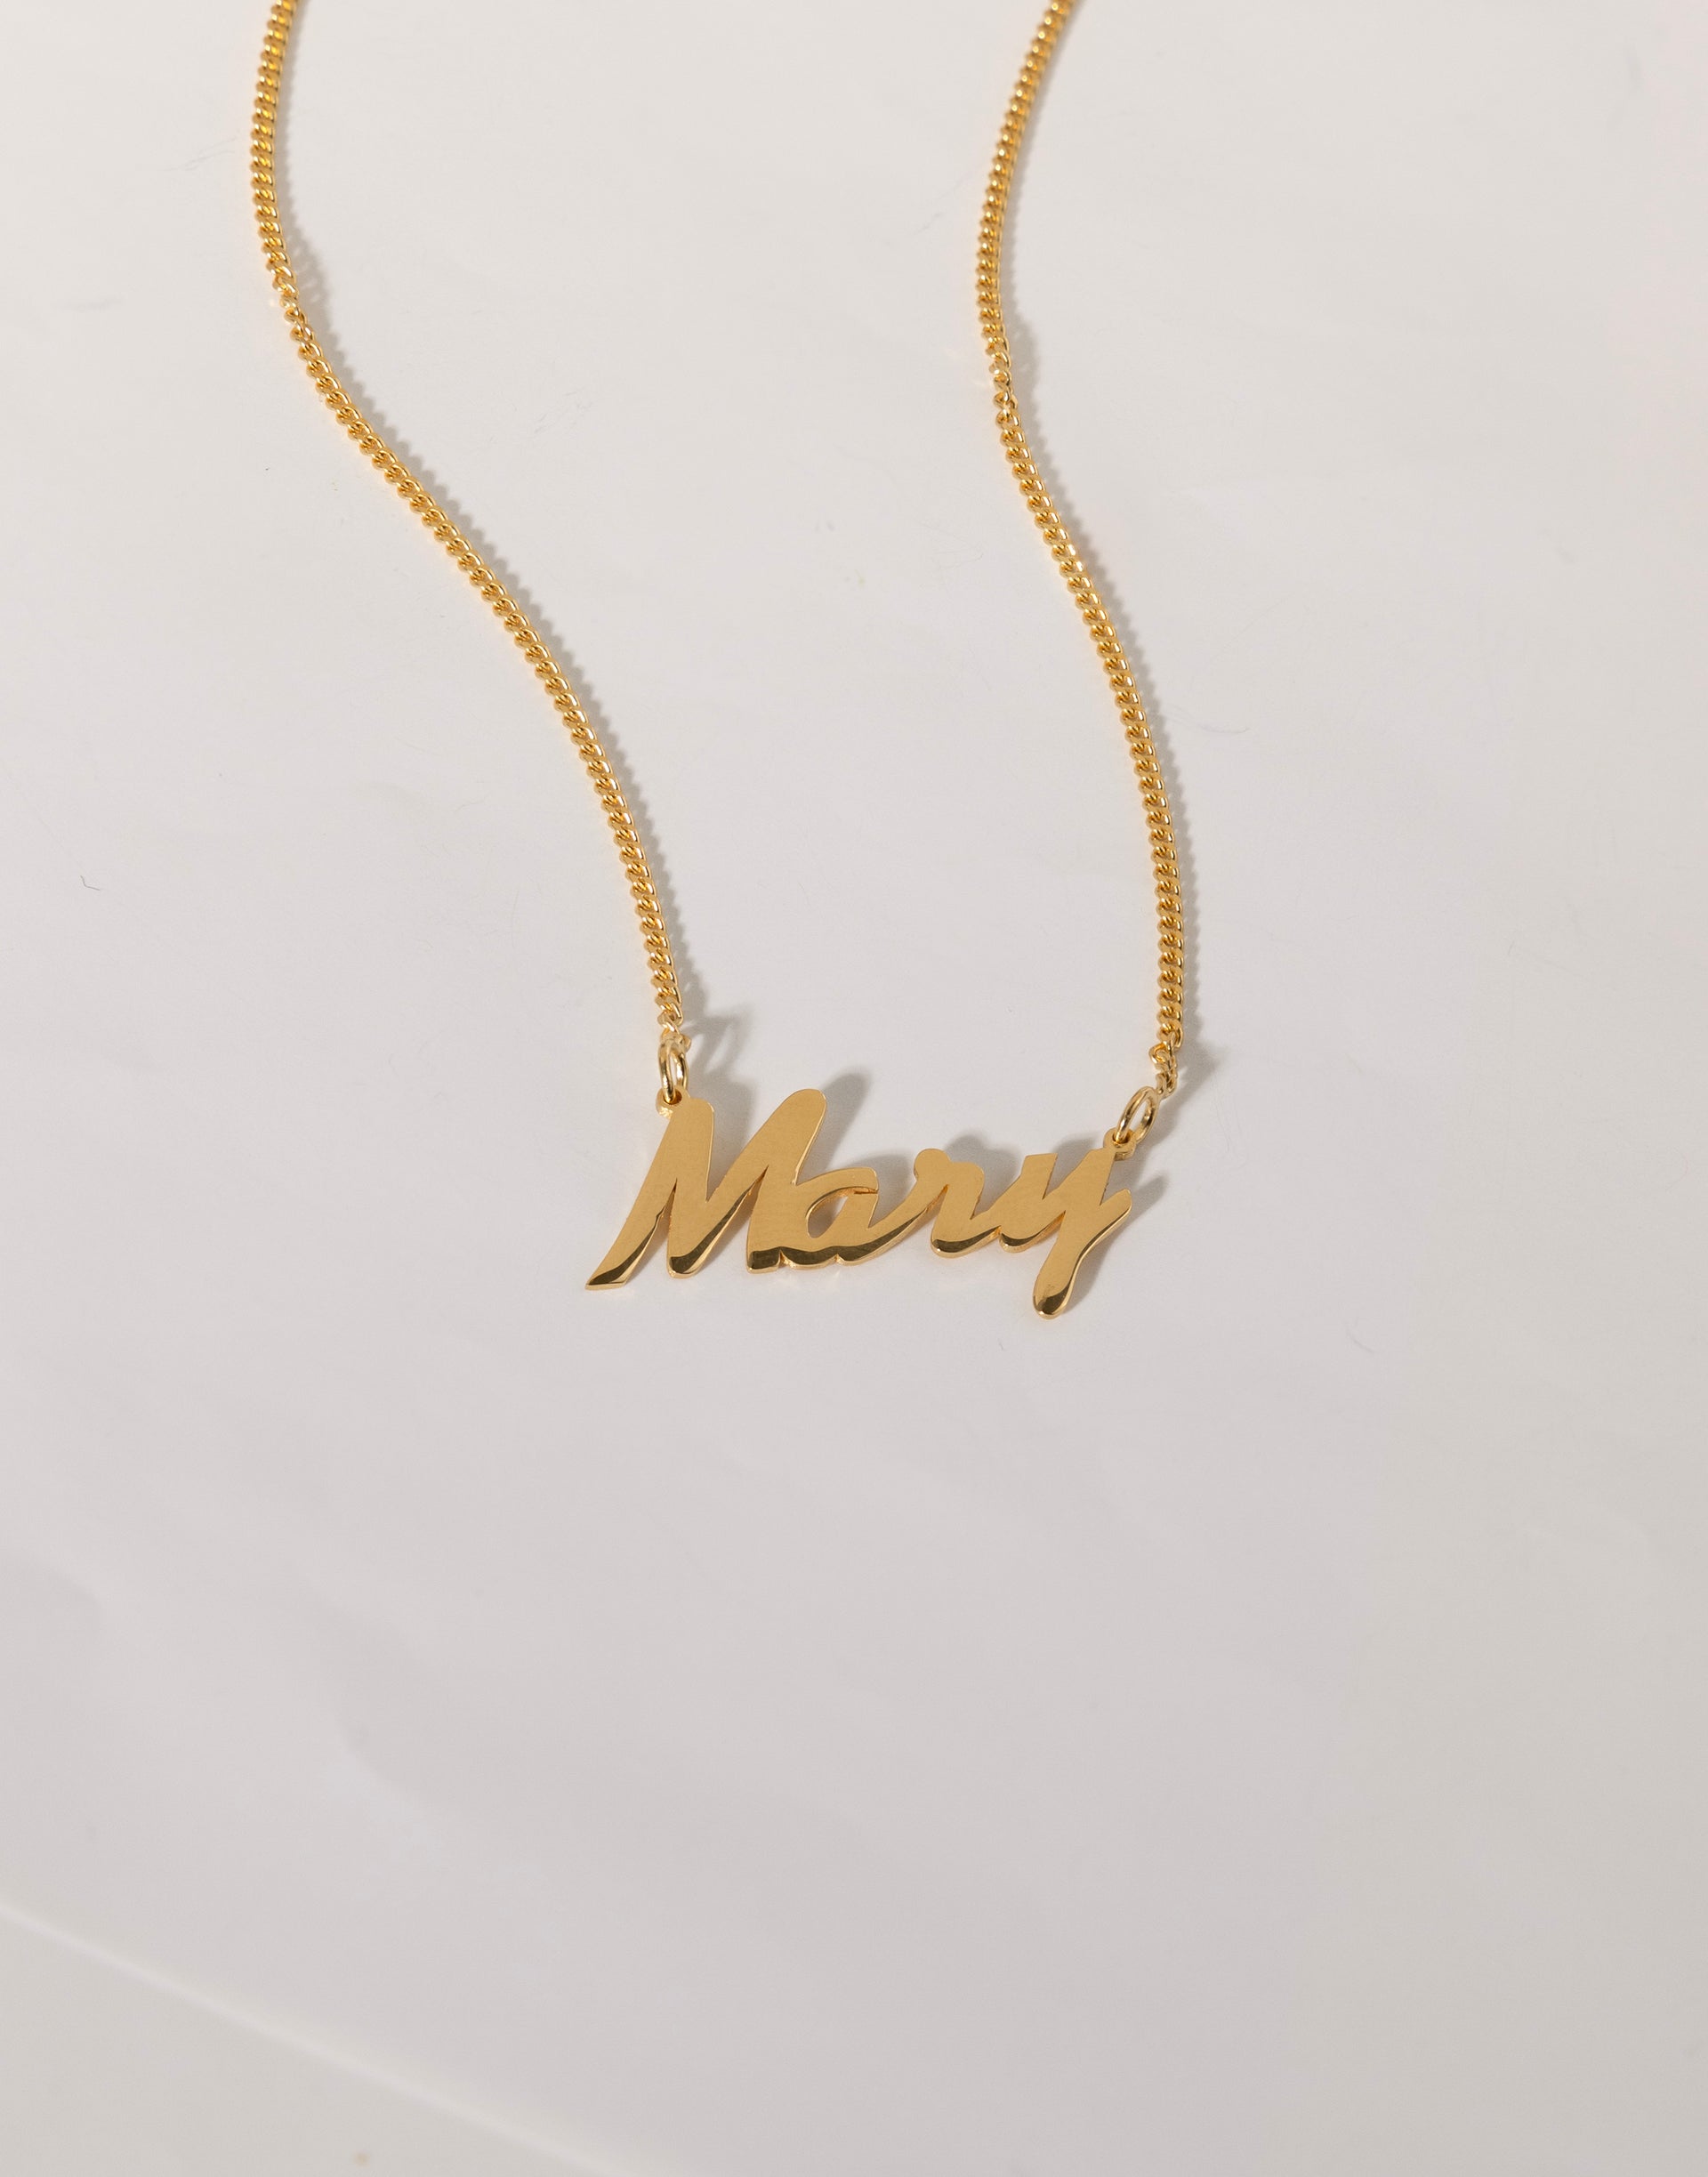 Gelin Cuban Chain Personalized Letter Bracelet in 18K Gold Vermeil